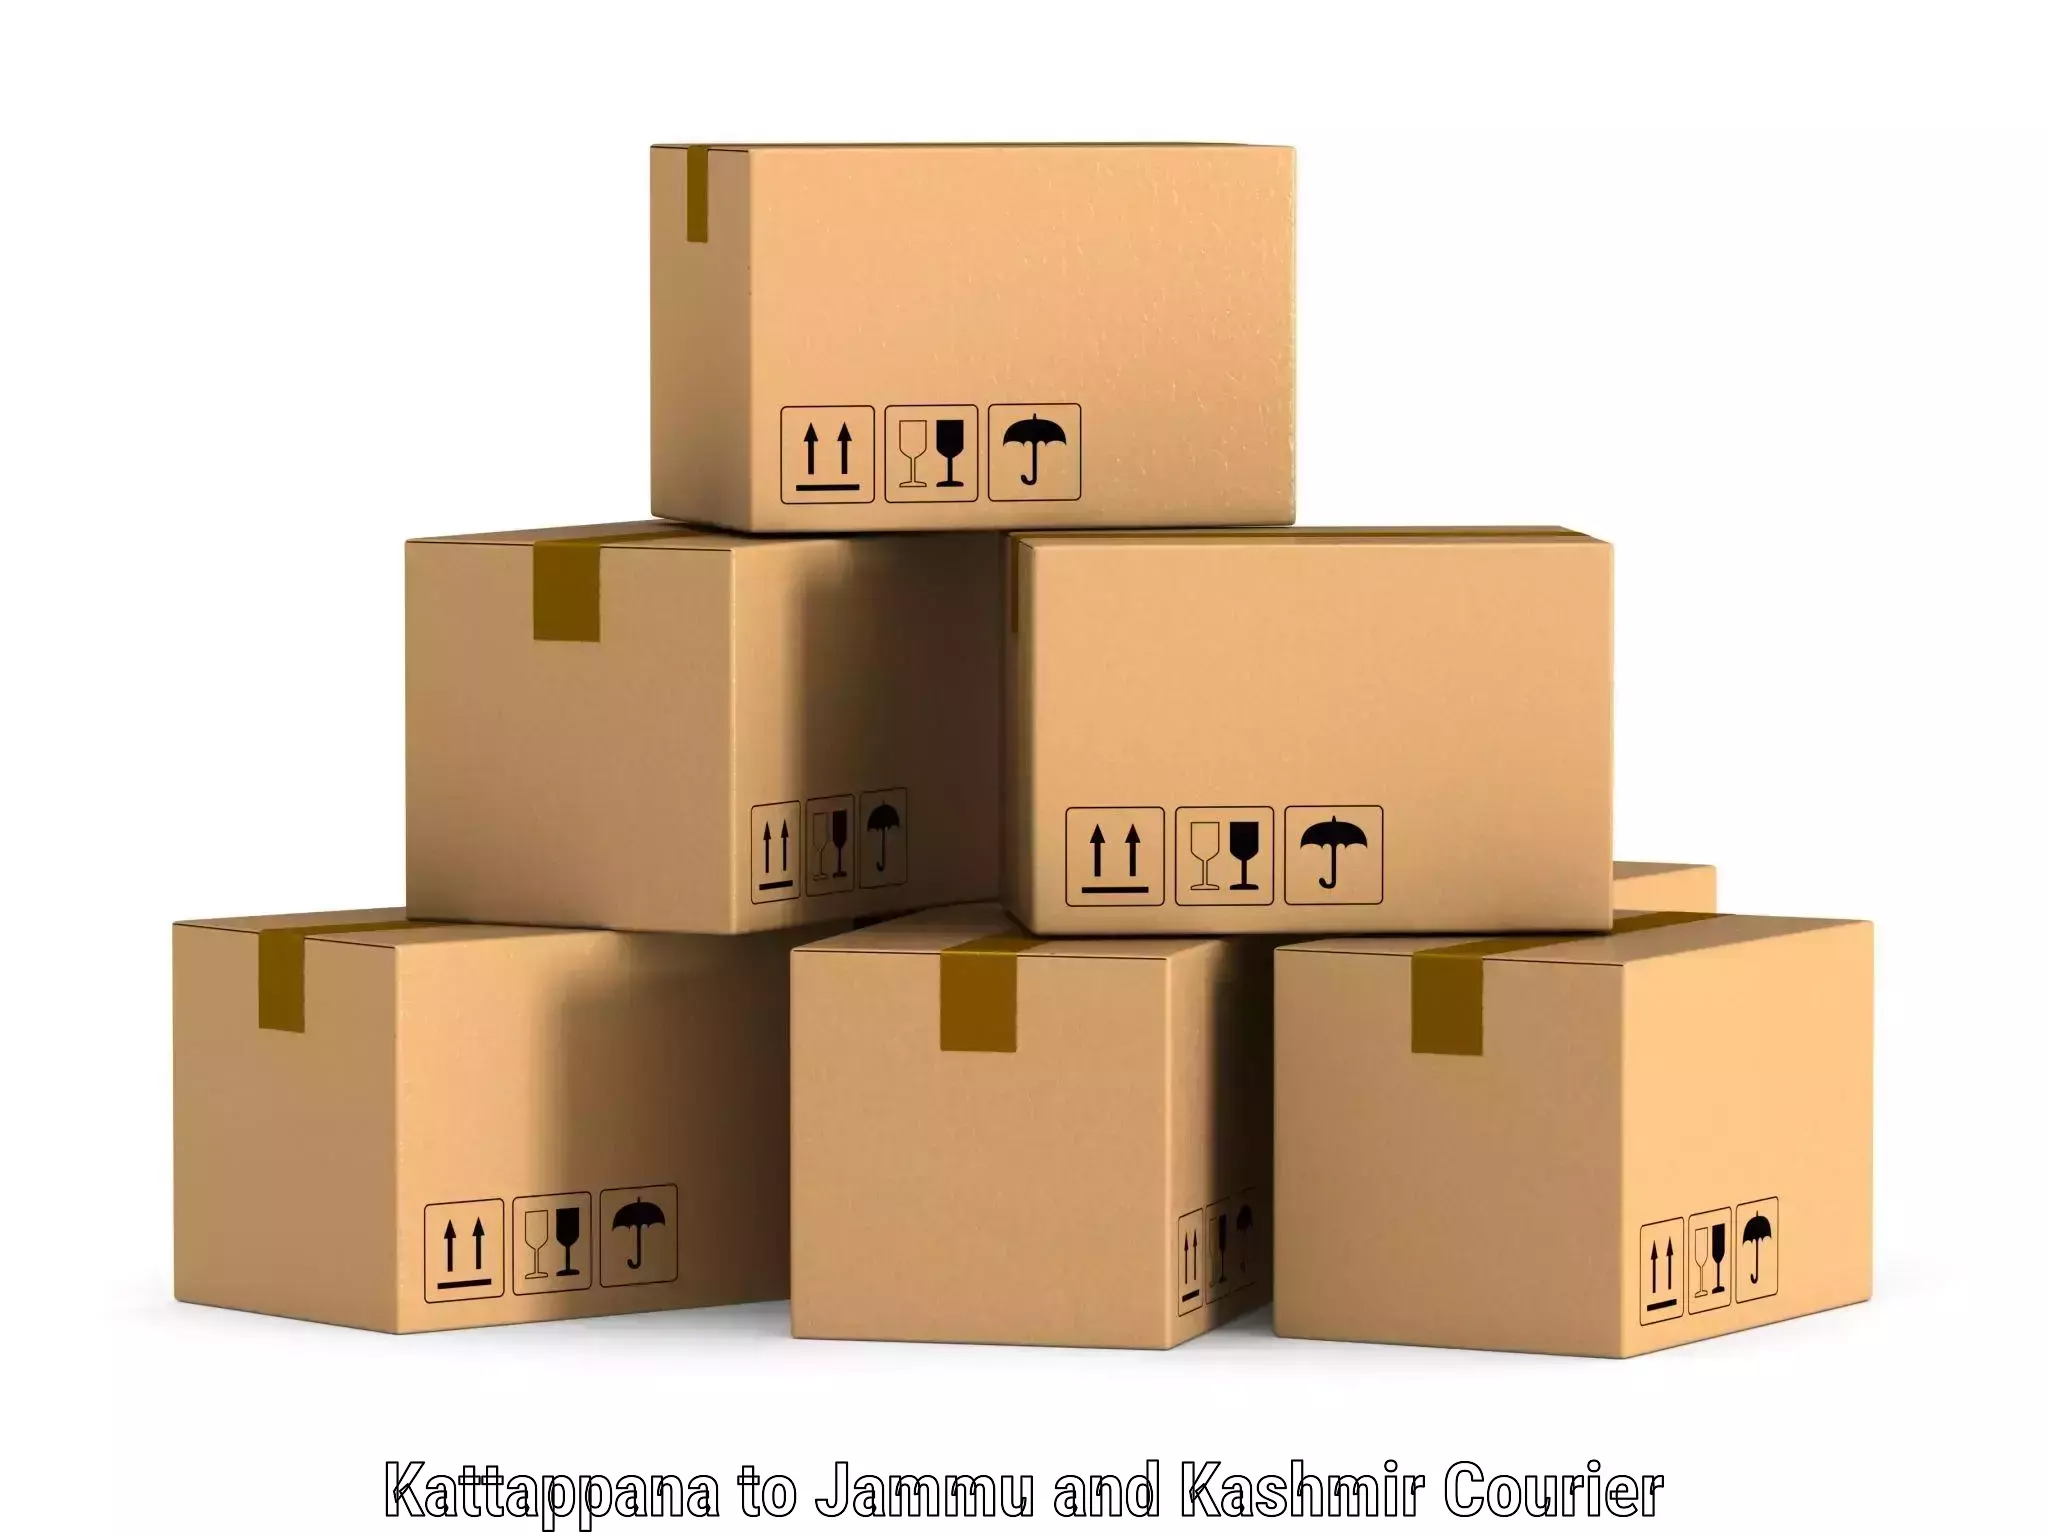 Advanced shipping network Kattappana to University of Jammu